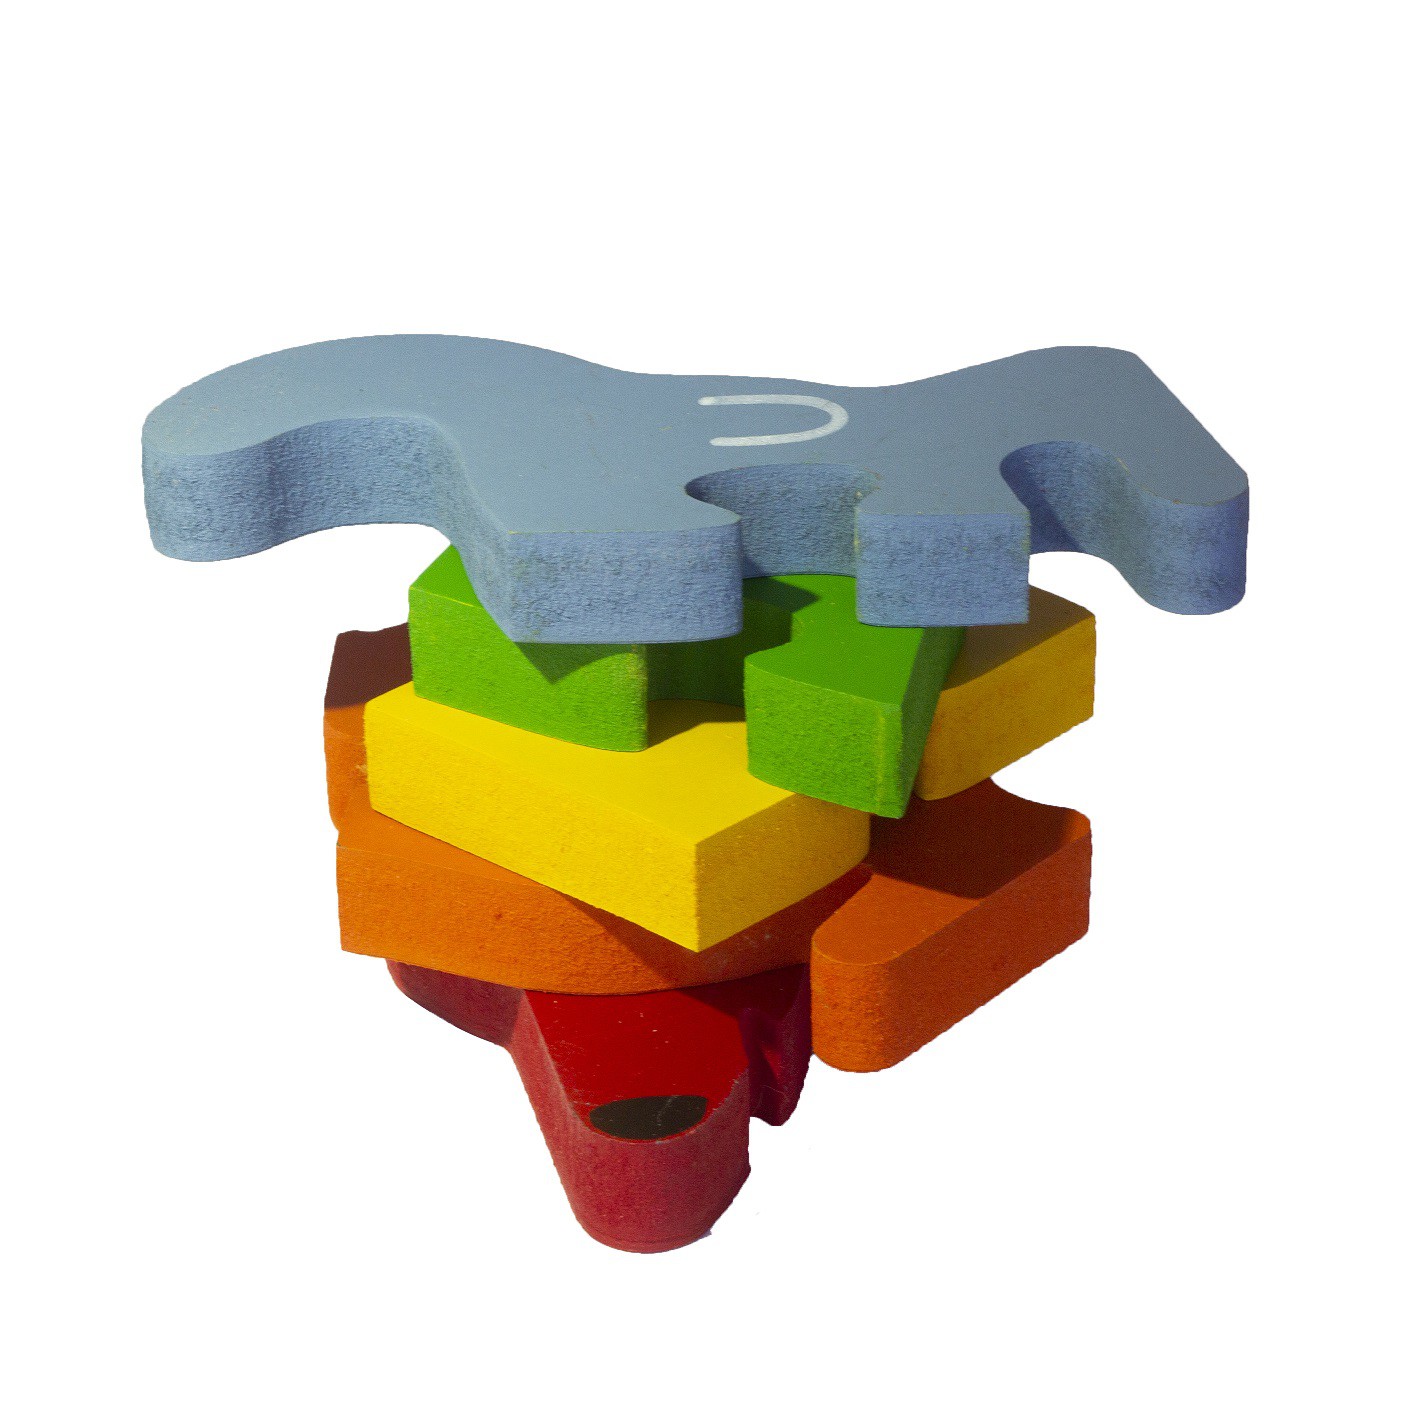 Brinquedo de madeira Quebra-cabeça com Vogais e Números - Cachorro, da Fábrika dos Sonhos - Cód. FS02